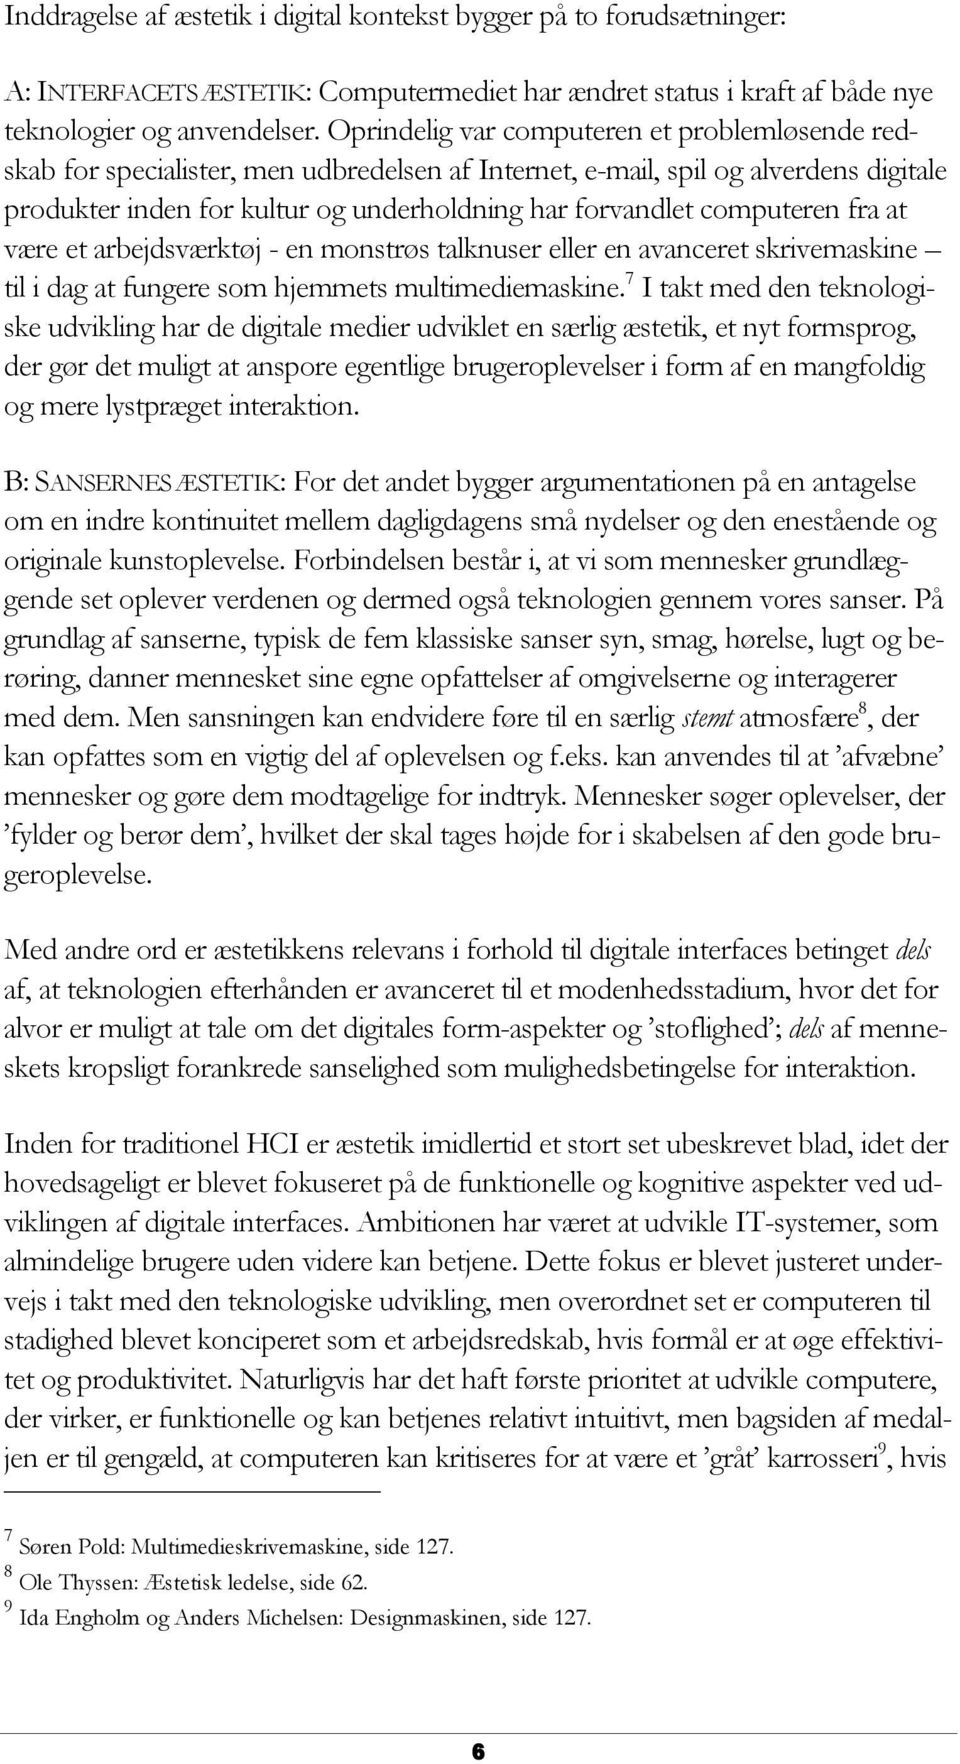 DEN ÆSTETISKE VENDING - PDF Free Download